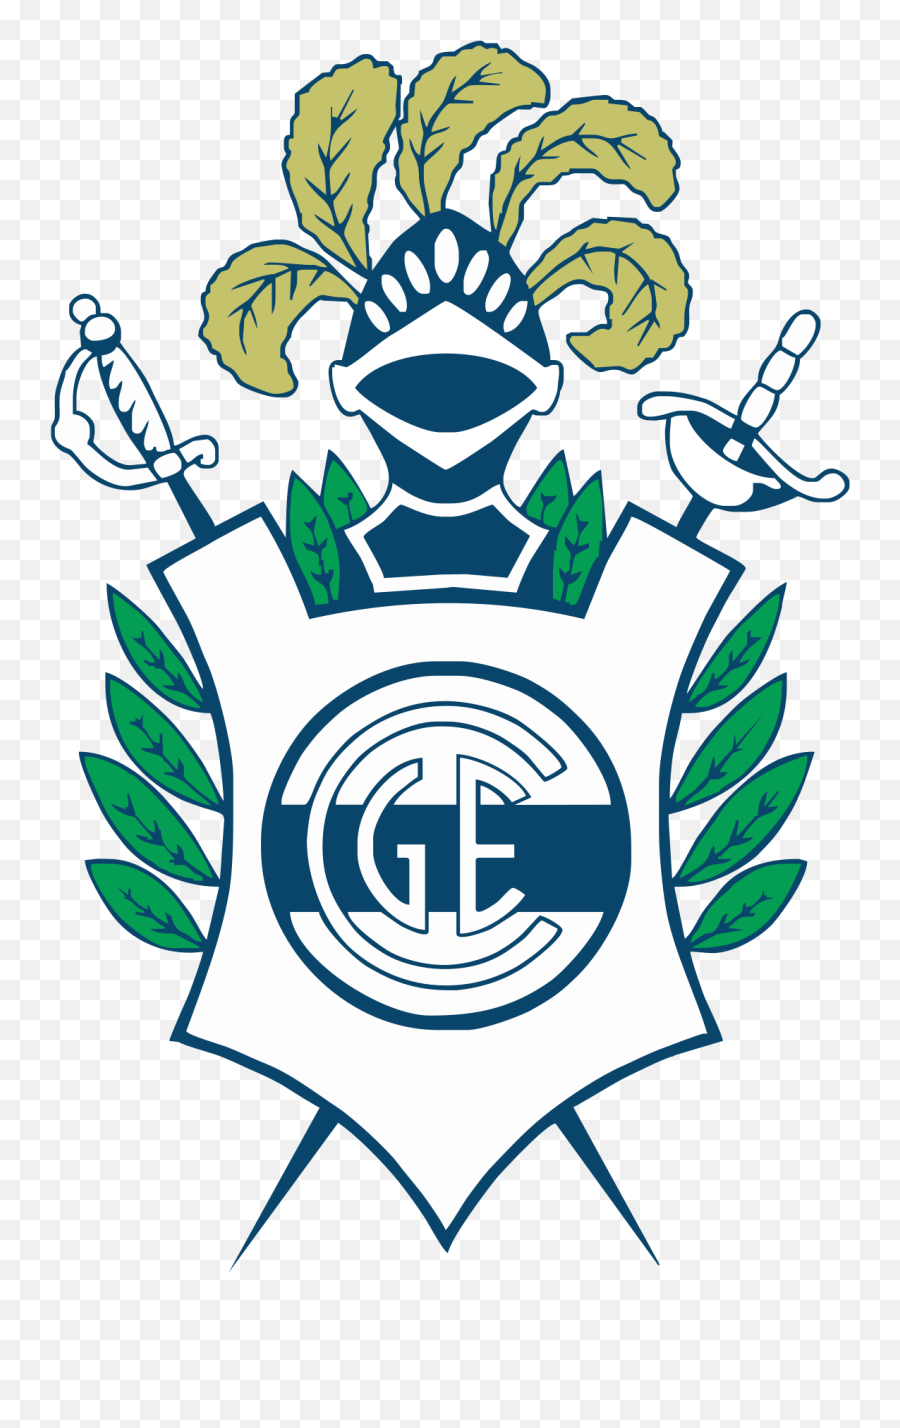 Club De Gimnasia Y Esgrima La Plata - Escudo De Gimnasia Y Esgrima De La Plata Emoji,Heart Emojis Clip Art?trackid=sp-006